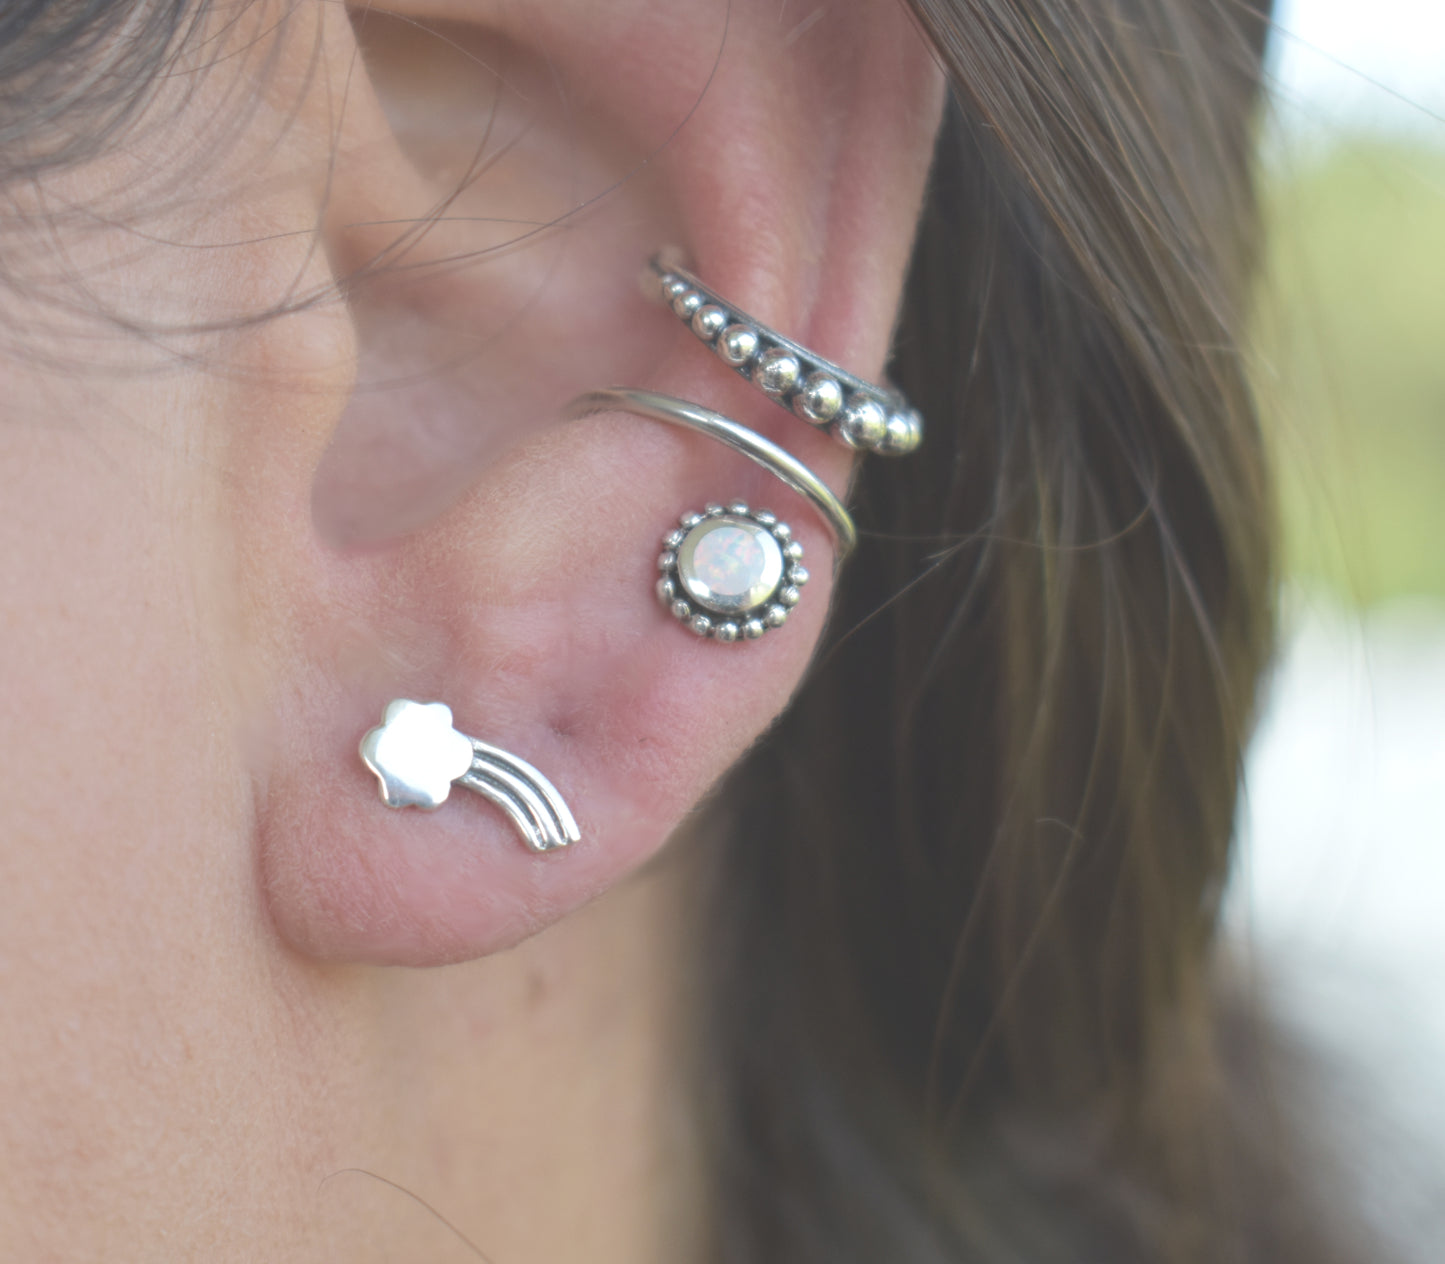 Rainbow Earrings- Cloud earrings, Sterling Silver Studs, Rainbow Posts